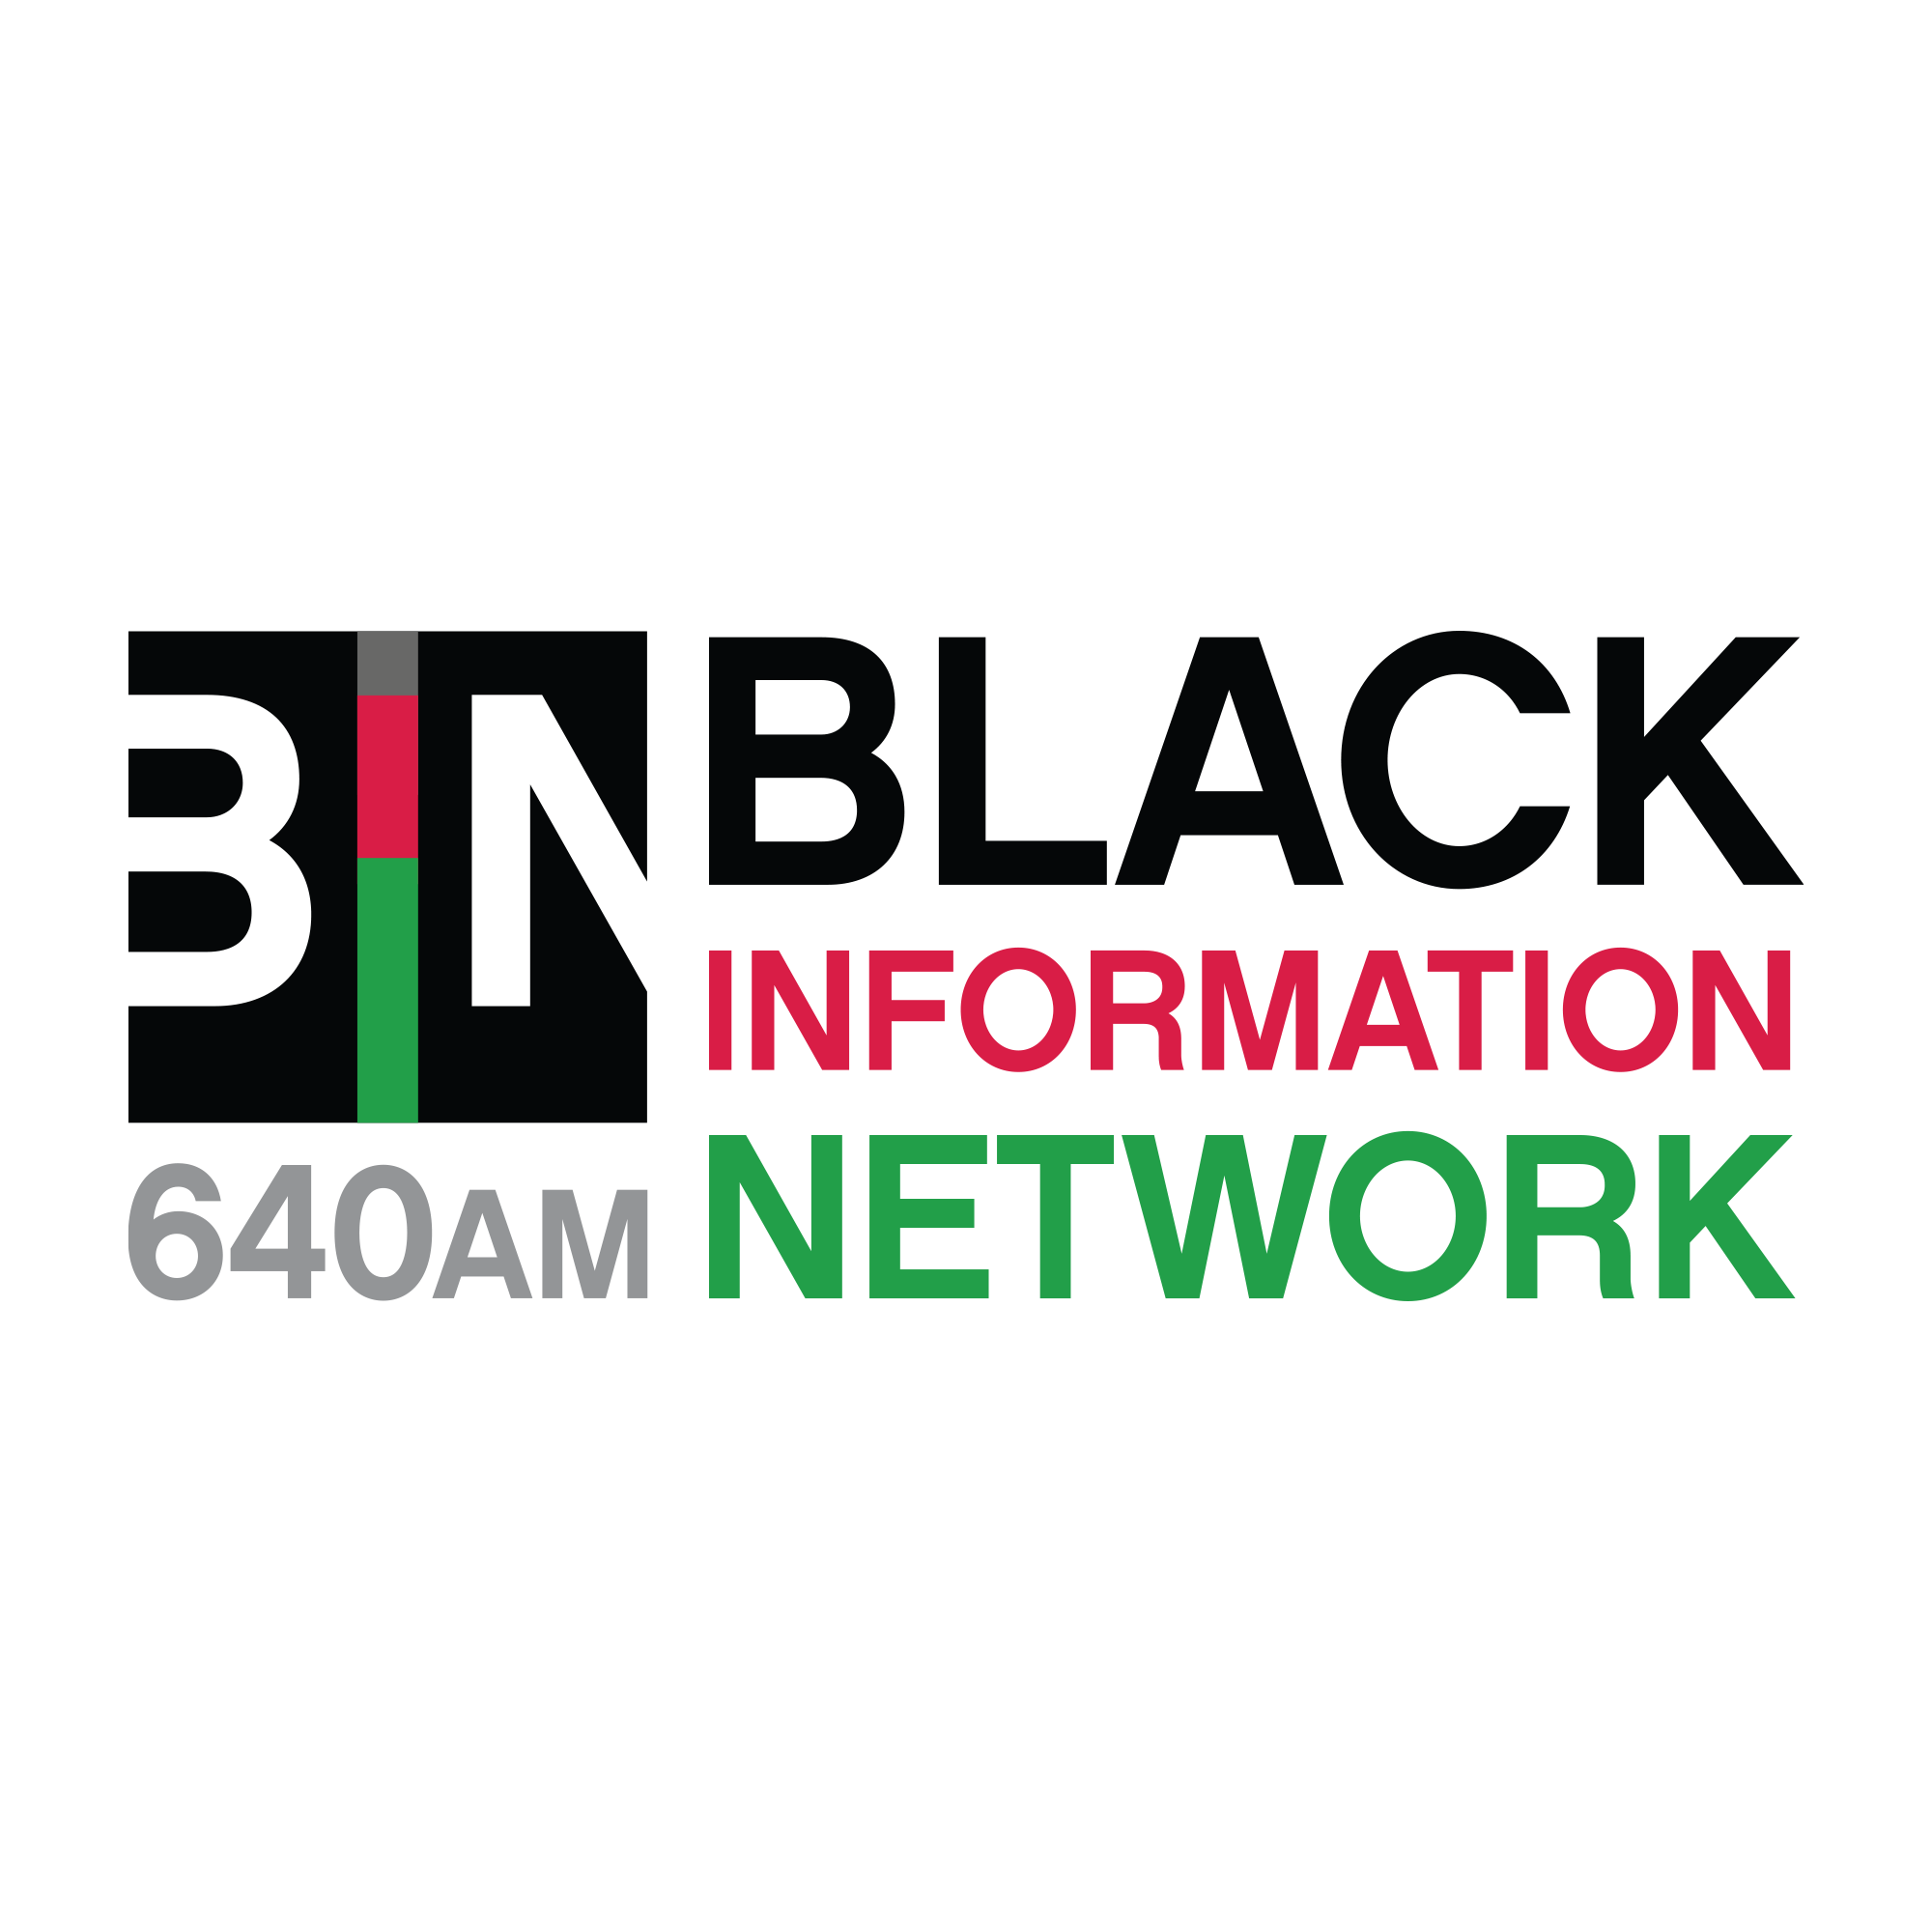 h. Black Information Network